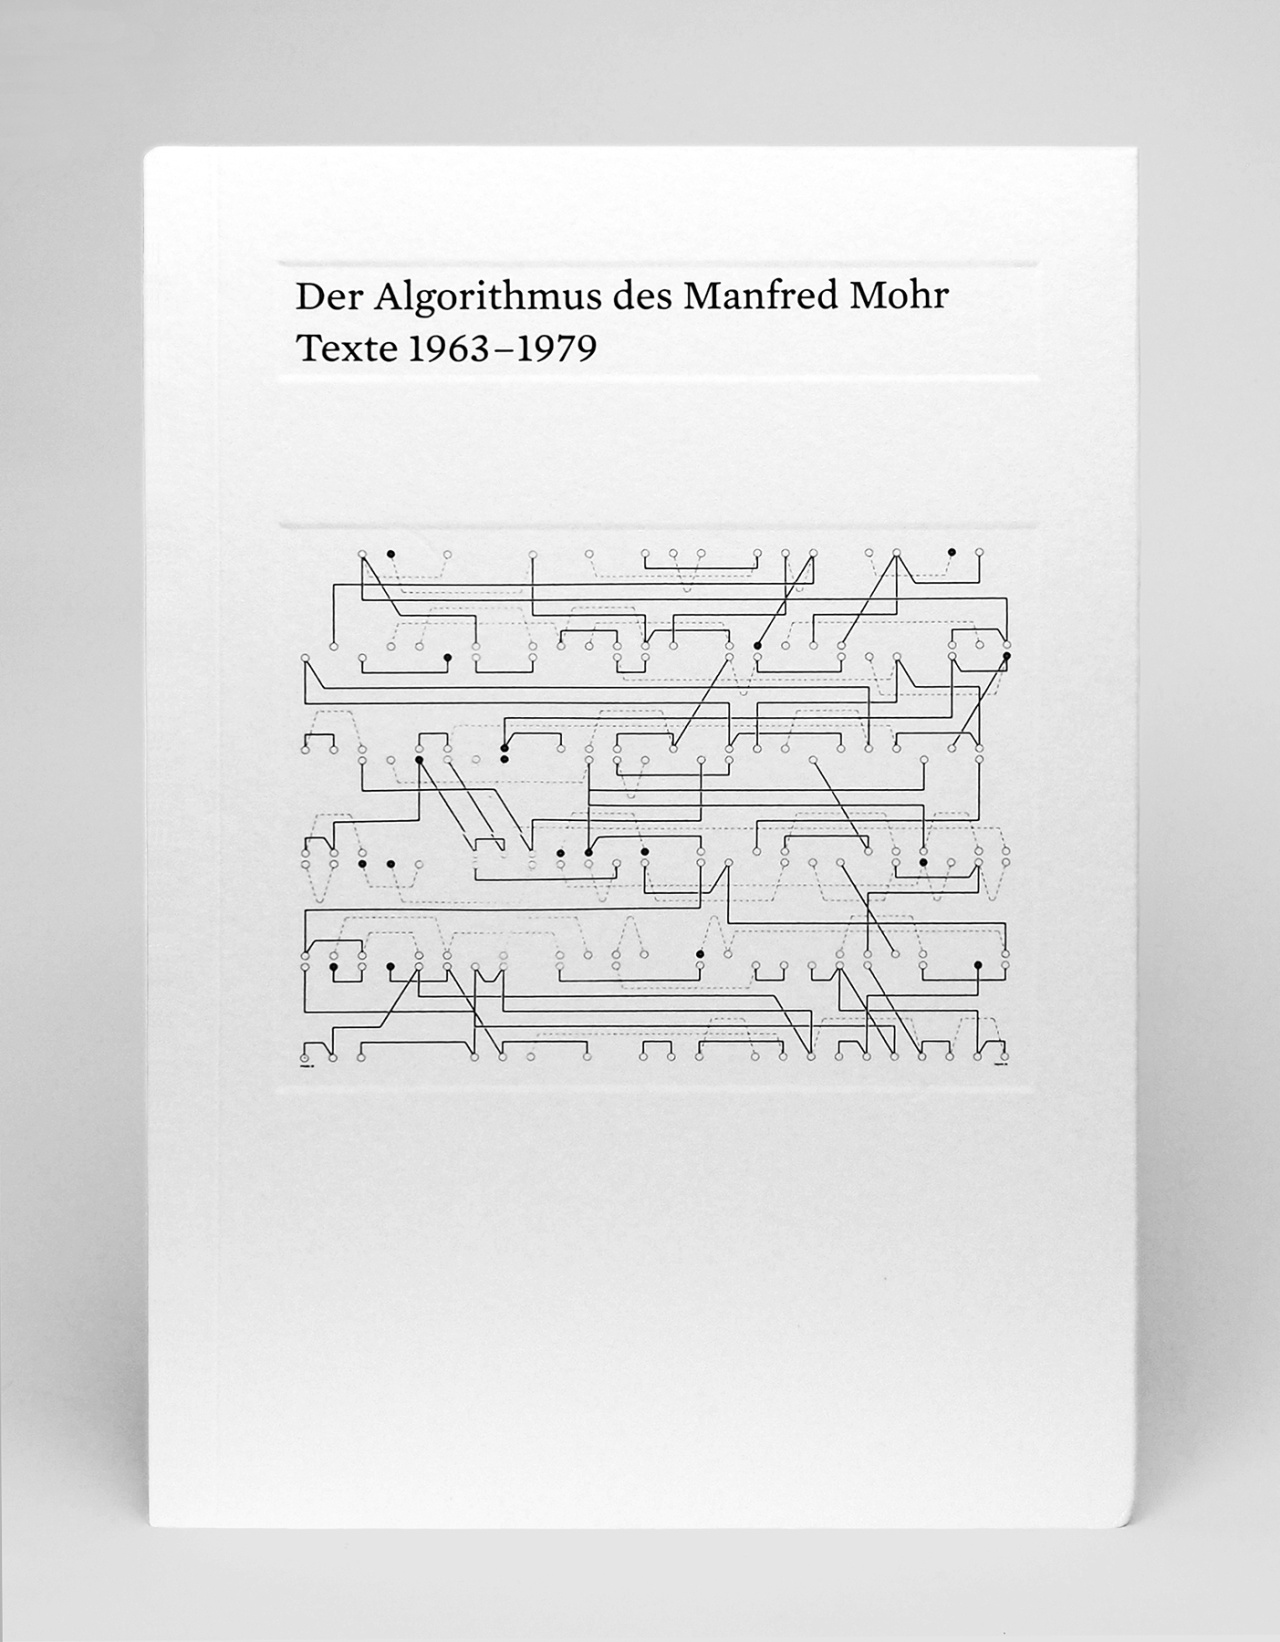 Cover der Publikation »Der Algorithmus des Manfred Mohr«: schwarzer Text und eine feine Linienzeichnung auf weißem Grund.